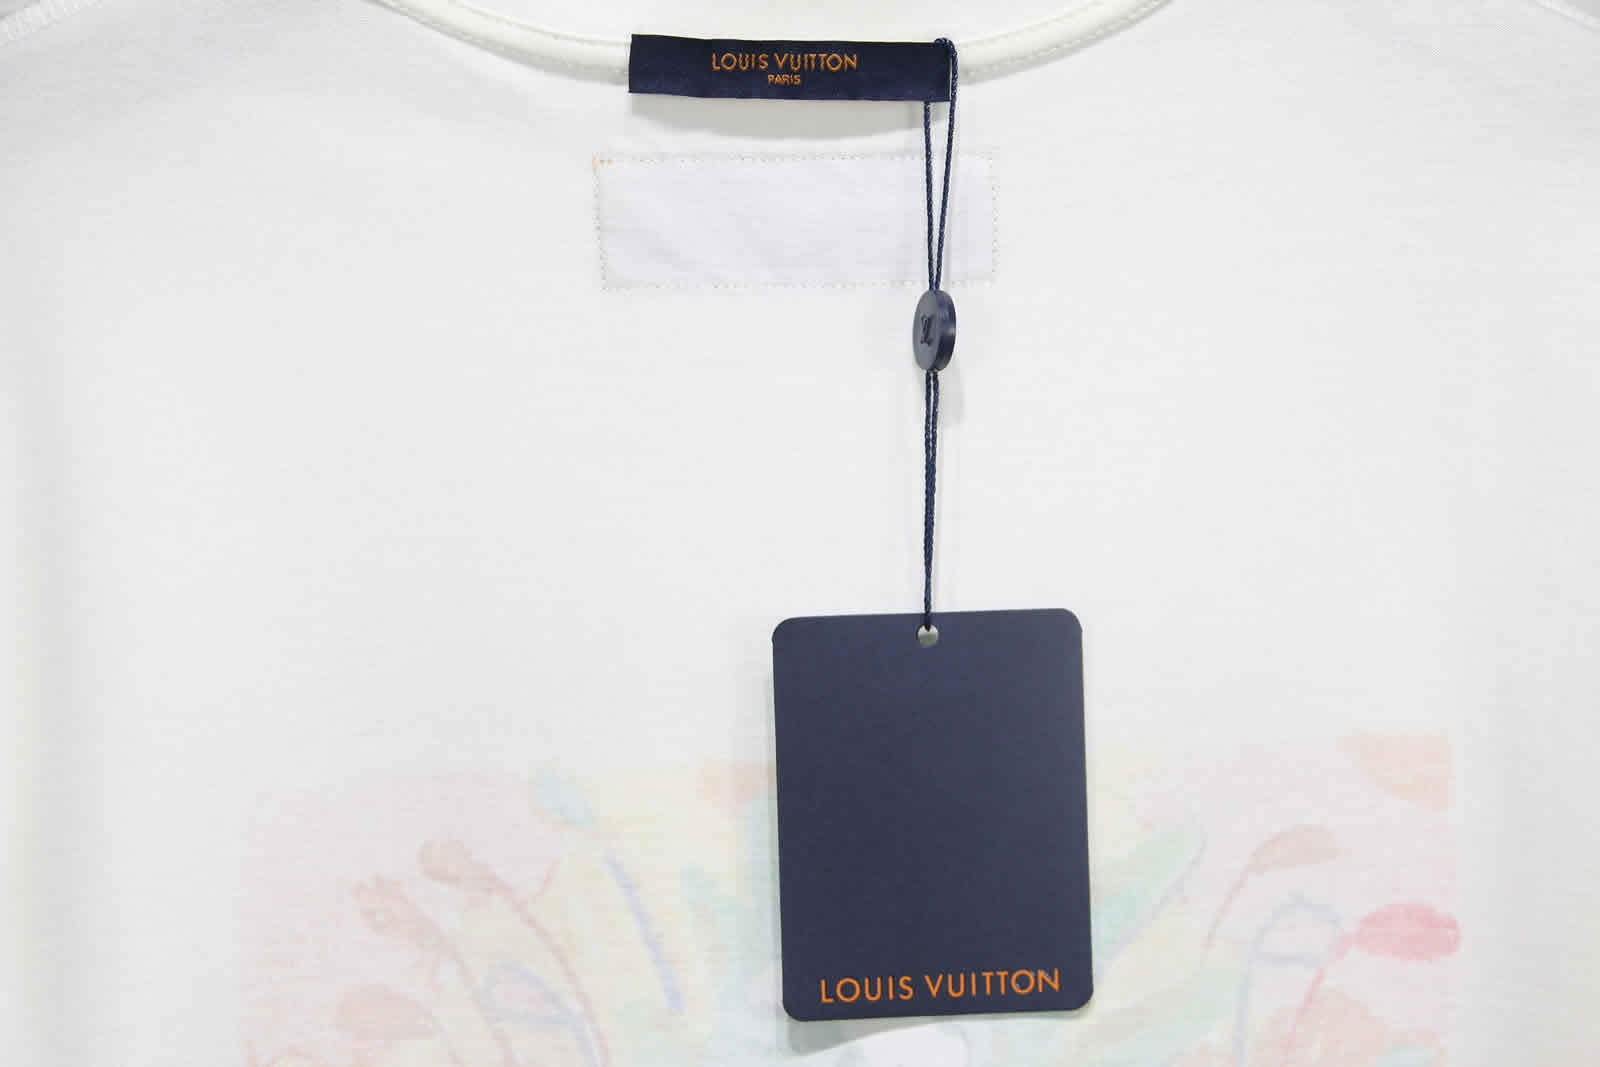 Louis Vuitton Graffiti Monster T Shirt 12 - kickbulk.org